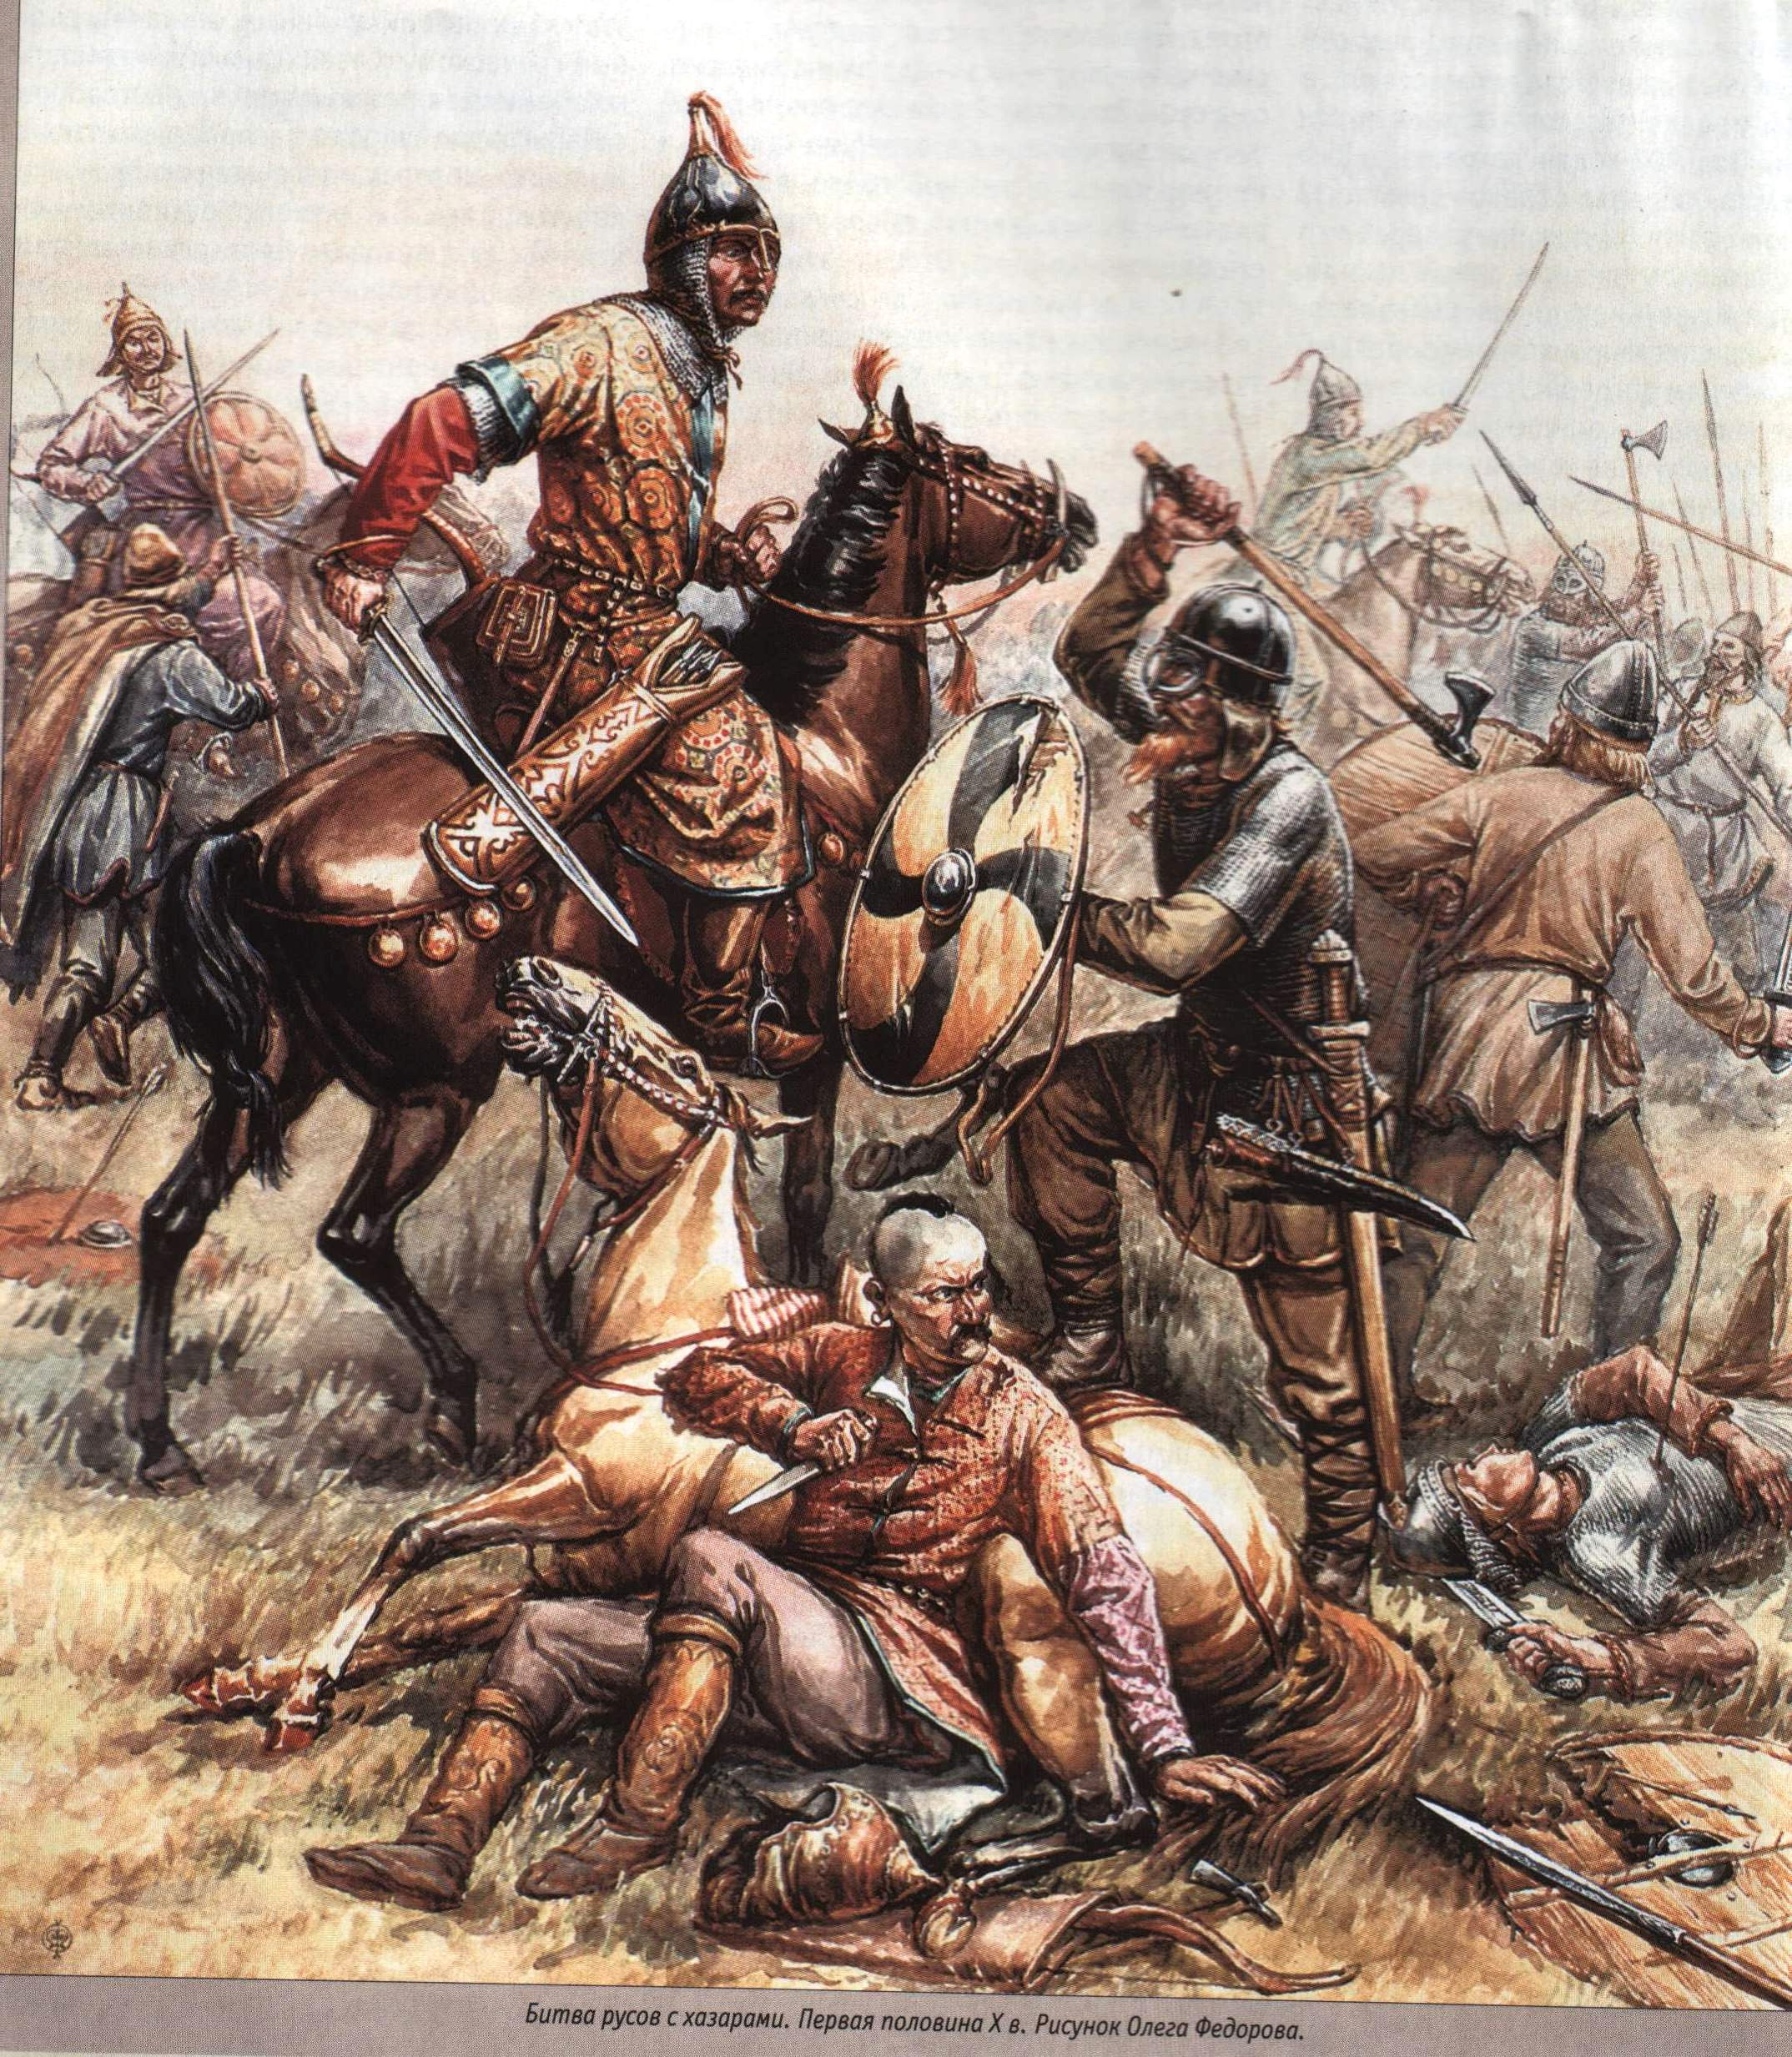 Борьба с кочевниками в 10 веке. Хазарский воин / Khazar Warrior. Гунны Савиры.